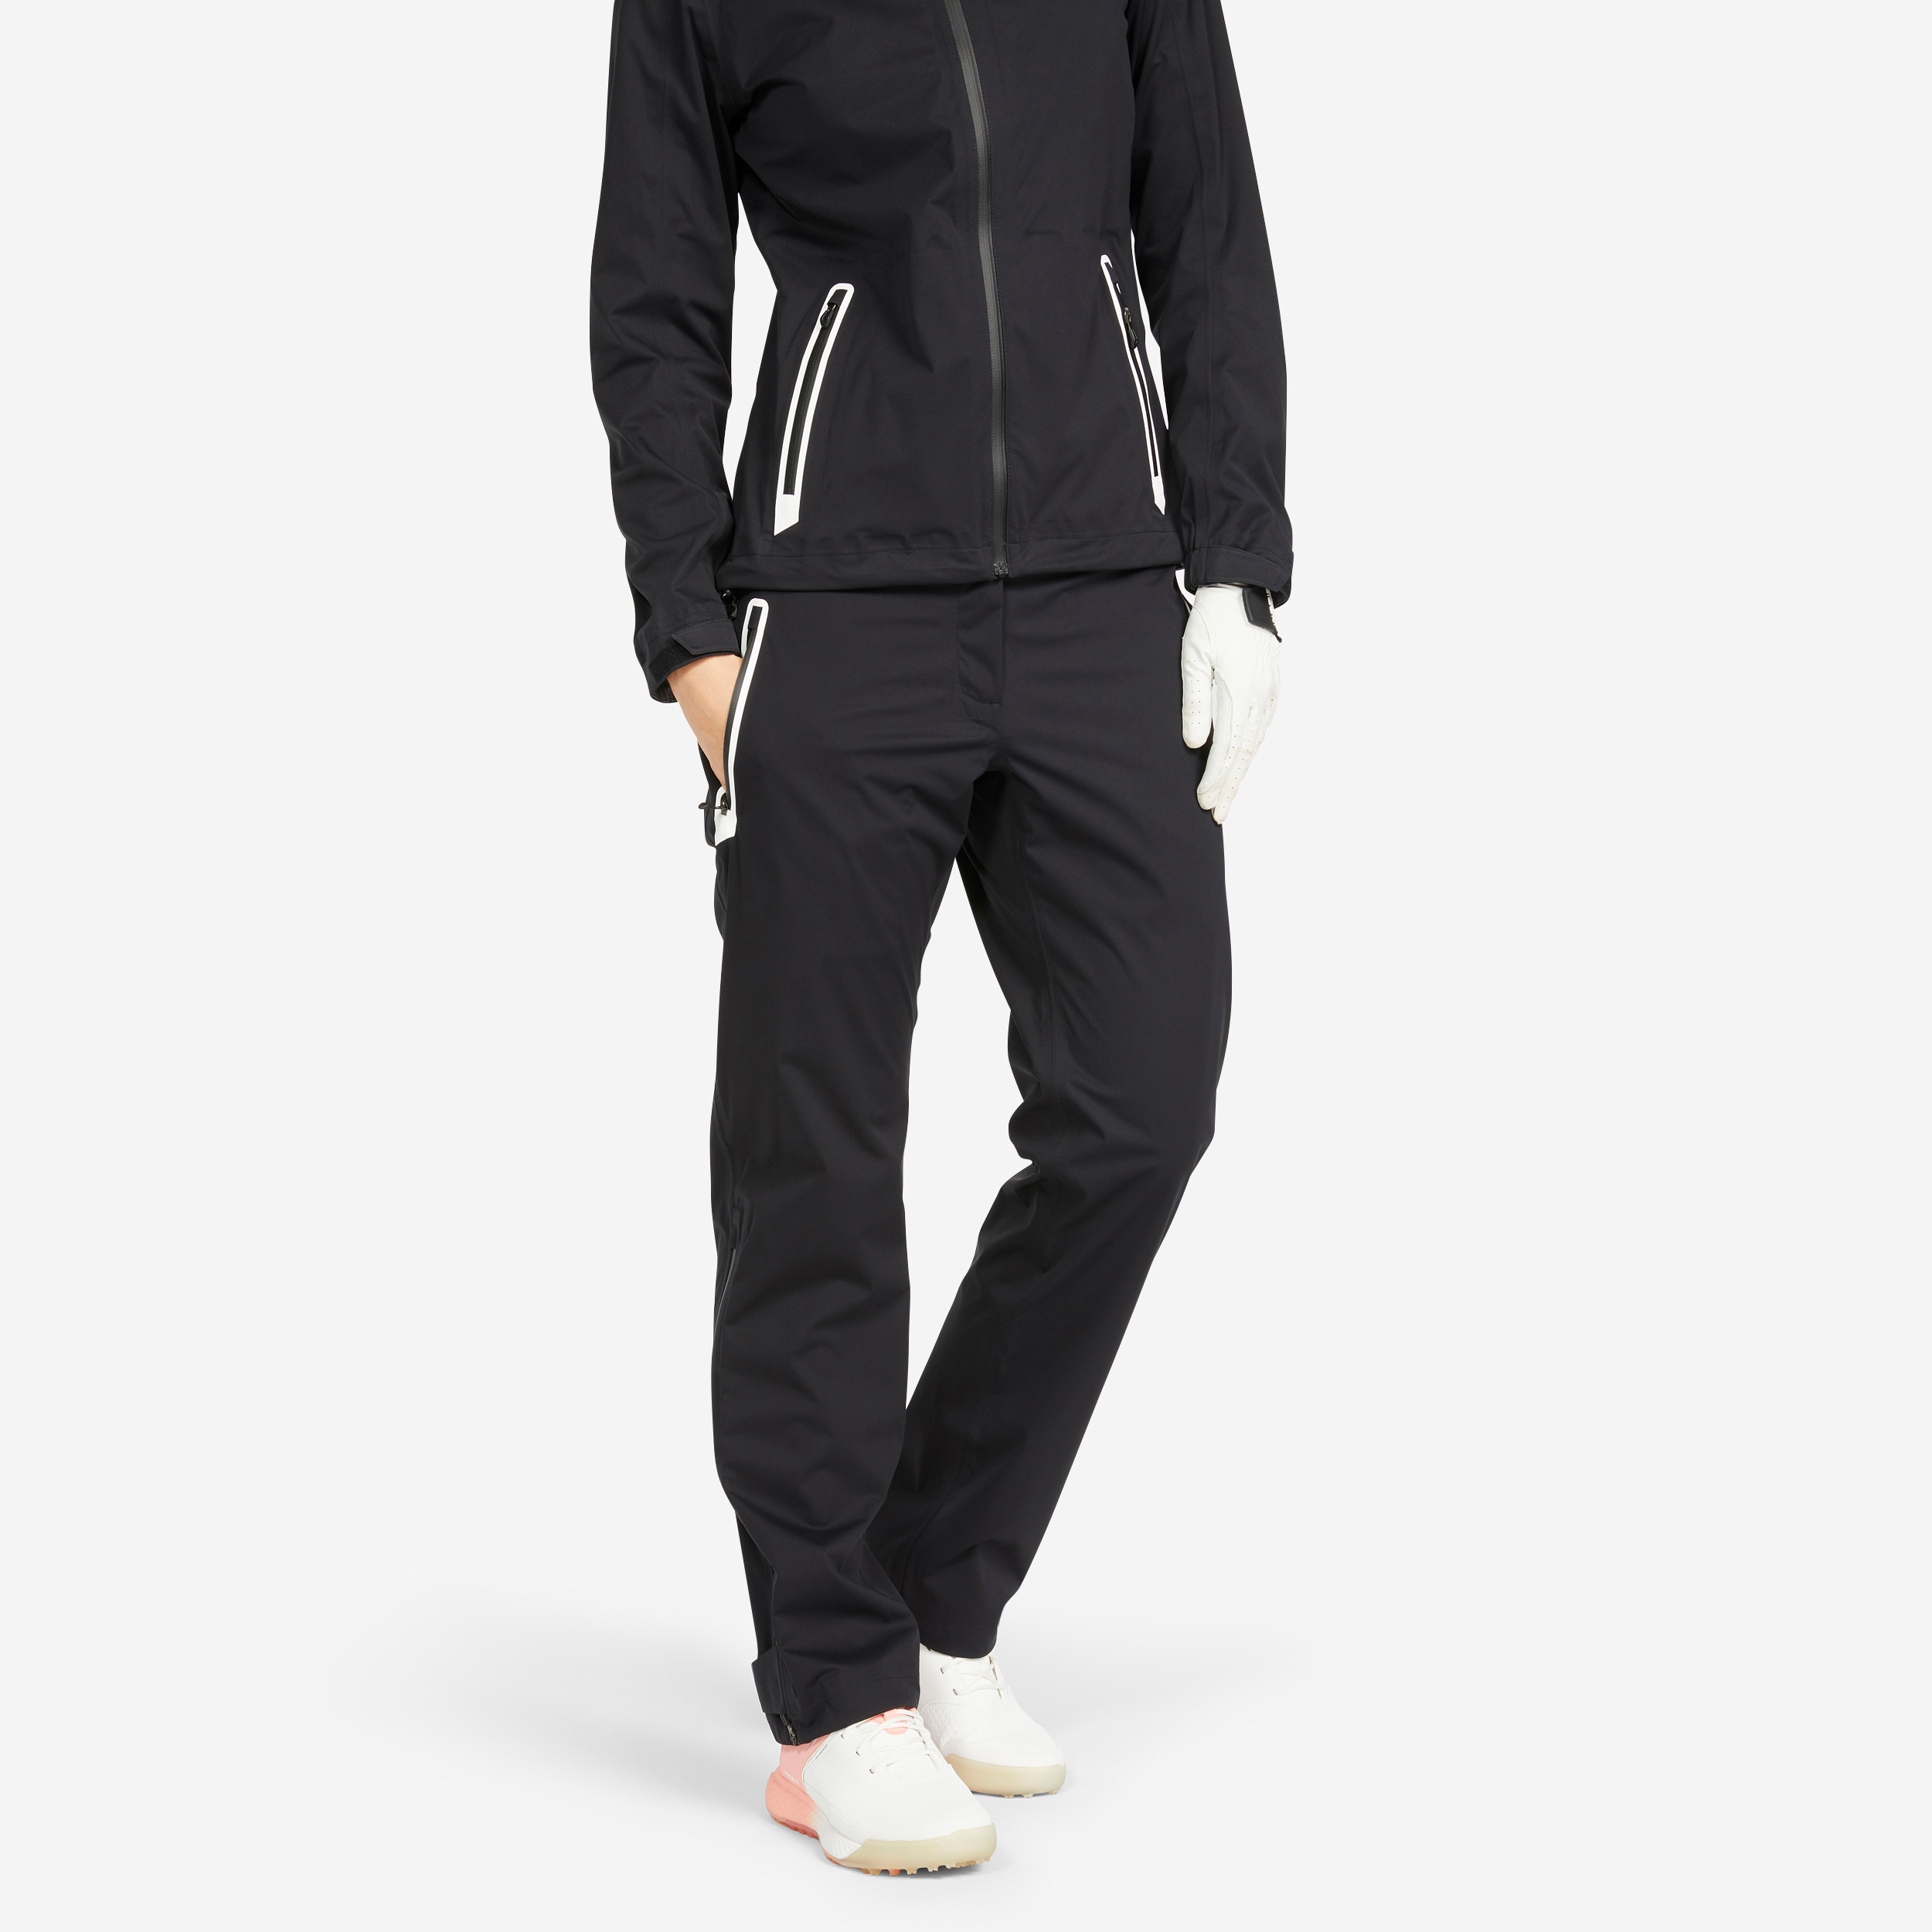 Pantalon golf imperméable Femme - RW500 noir